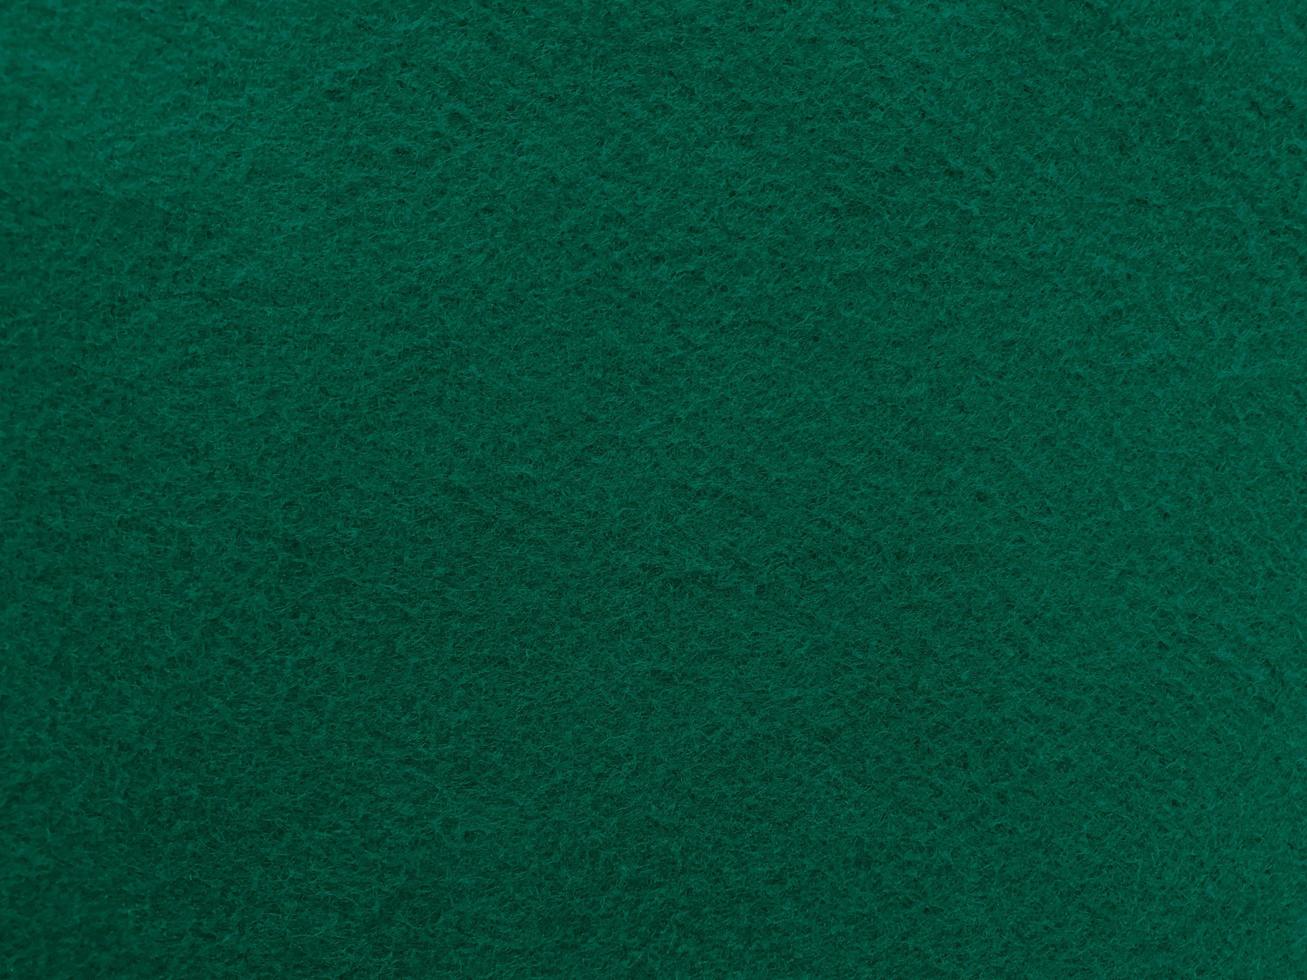 sentiu a textura de fundo do material têxtil áspero macio verde escuro fechar, mesa de pôquer, bola de tênis, toalha de mesa. fundo de tecido novo vazio. foto